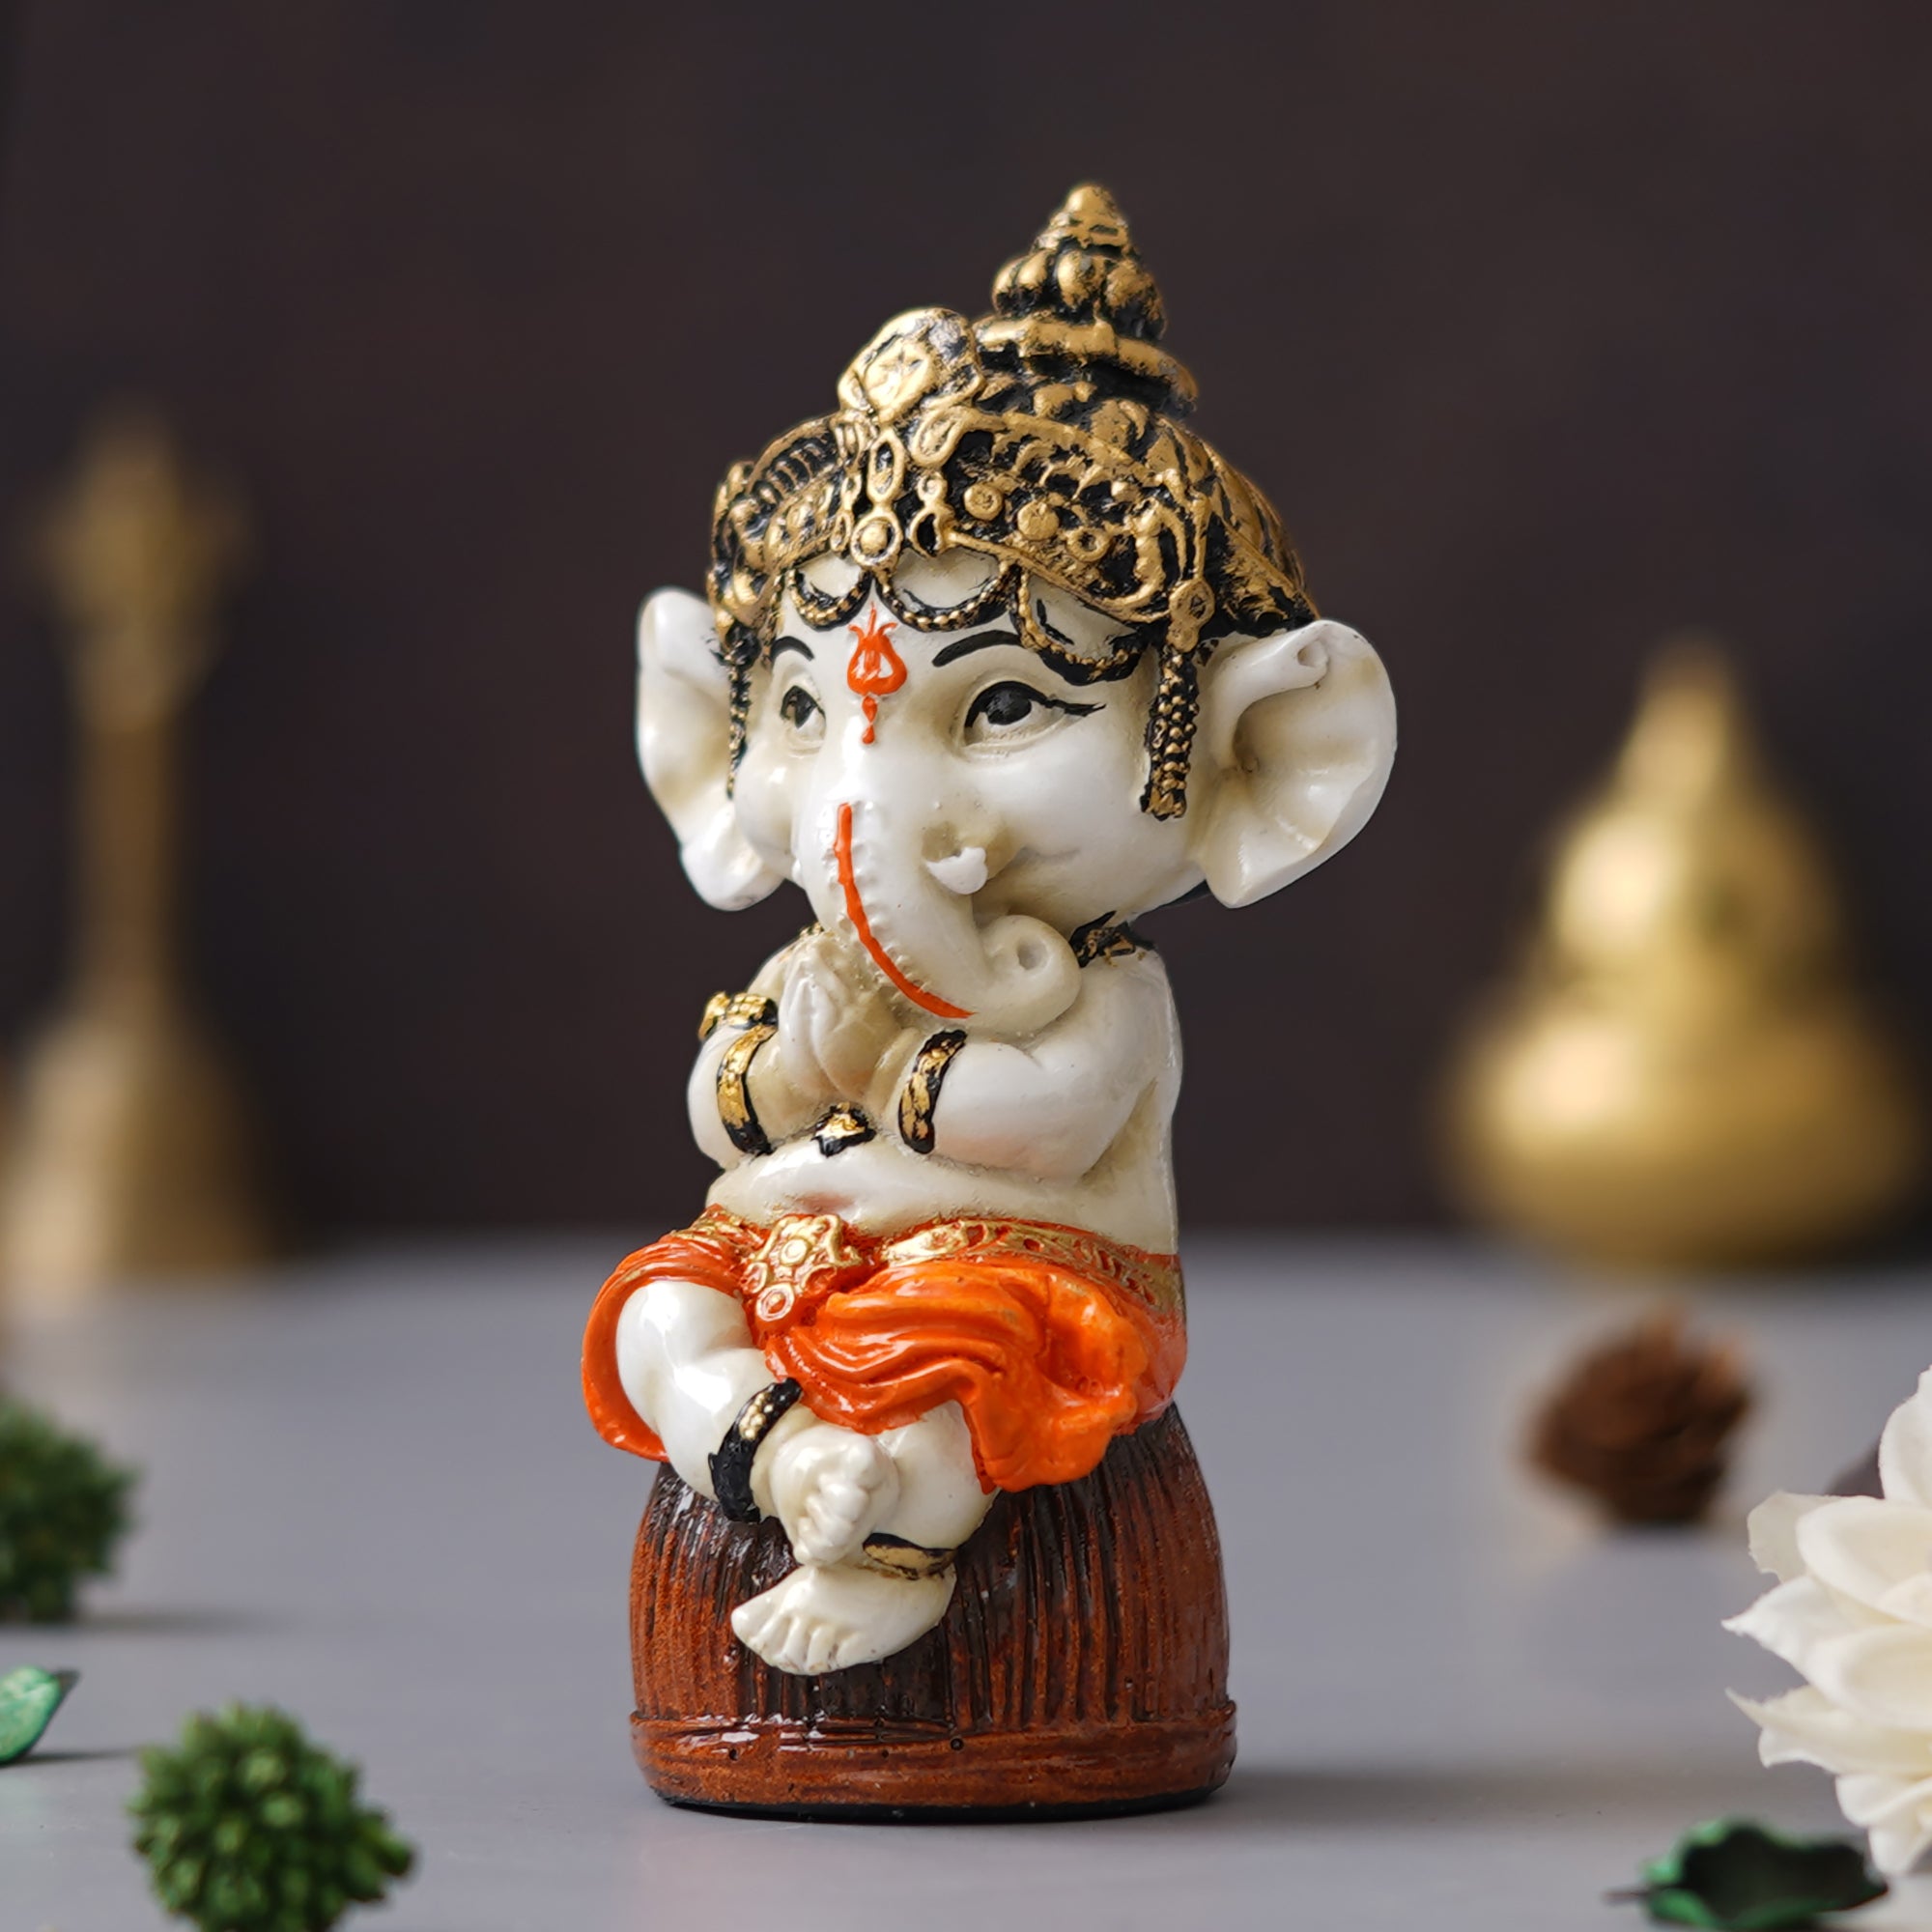 eCraftIndia Orange Polyresin Handcrafted Lord Ganesha Idol Sitting on Rock 5